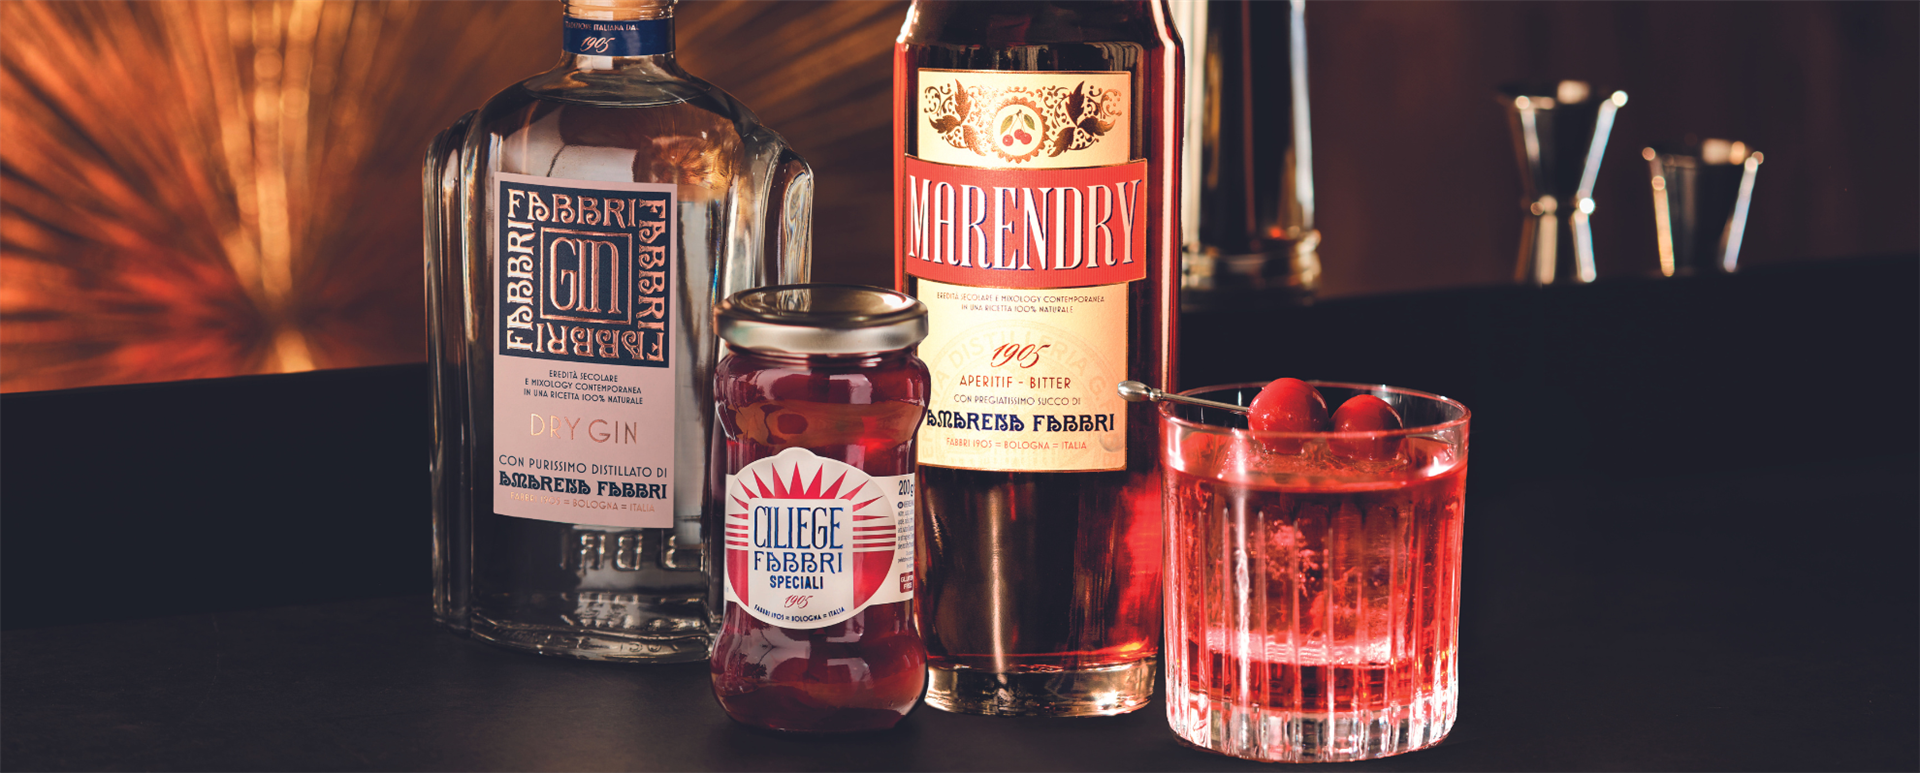 Premiata Distilleria Fabbri è il segreto per creare cocktail rivoluzionari, con Dry Gin Fabbri, Marendry Bitter e Ciliege Fabbri Speciali